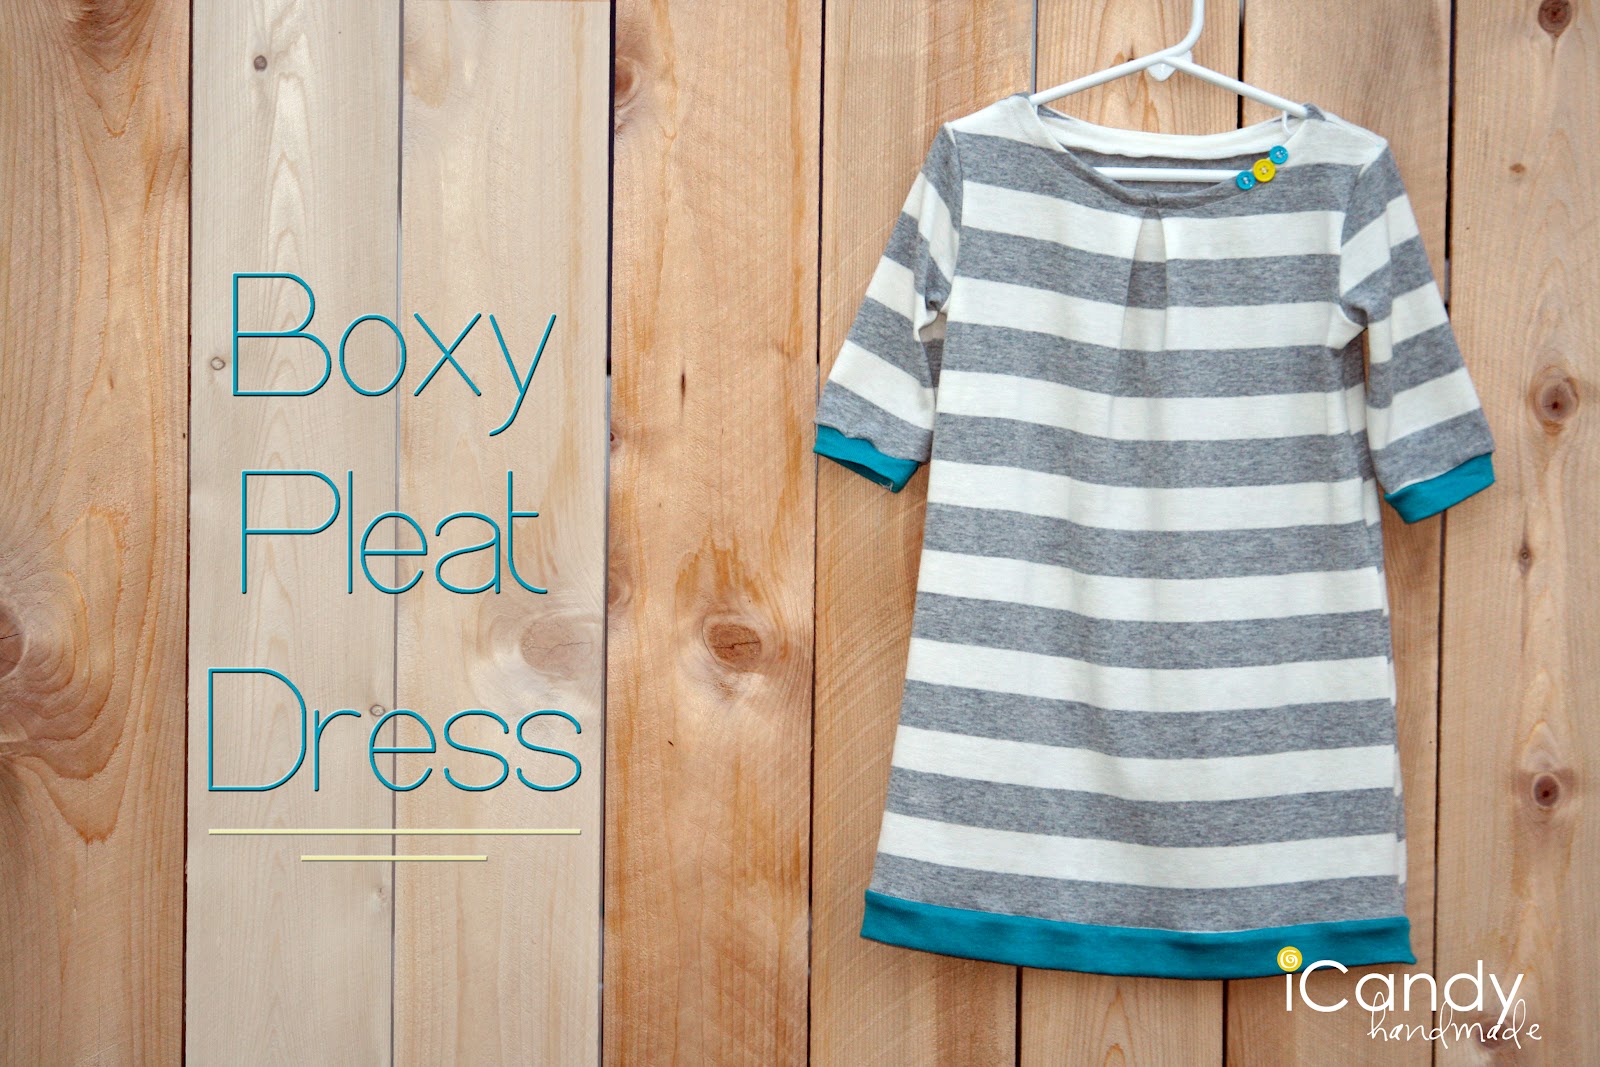 Boxy pleat dress